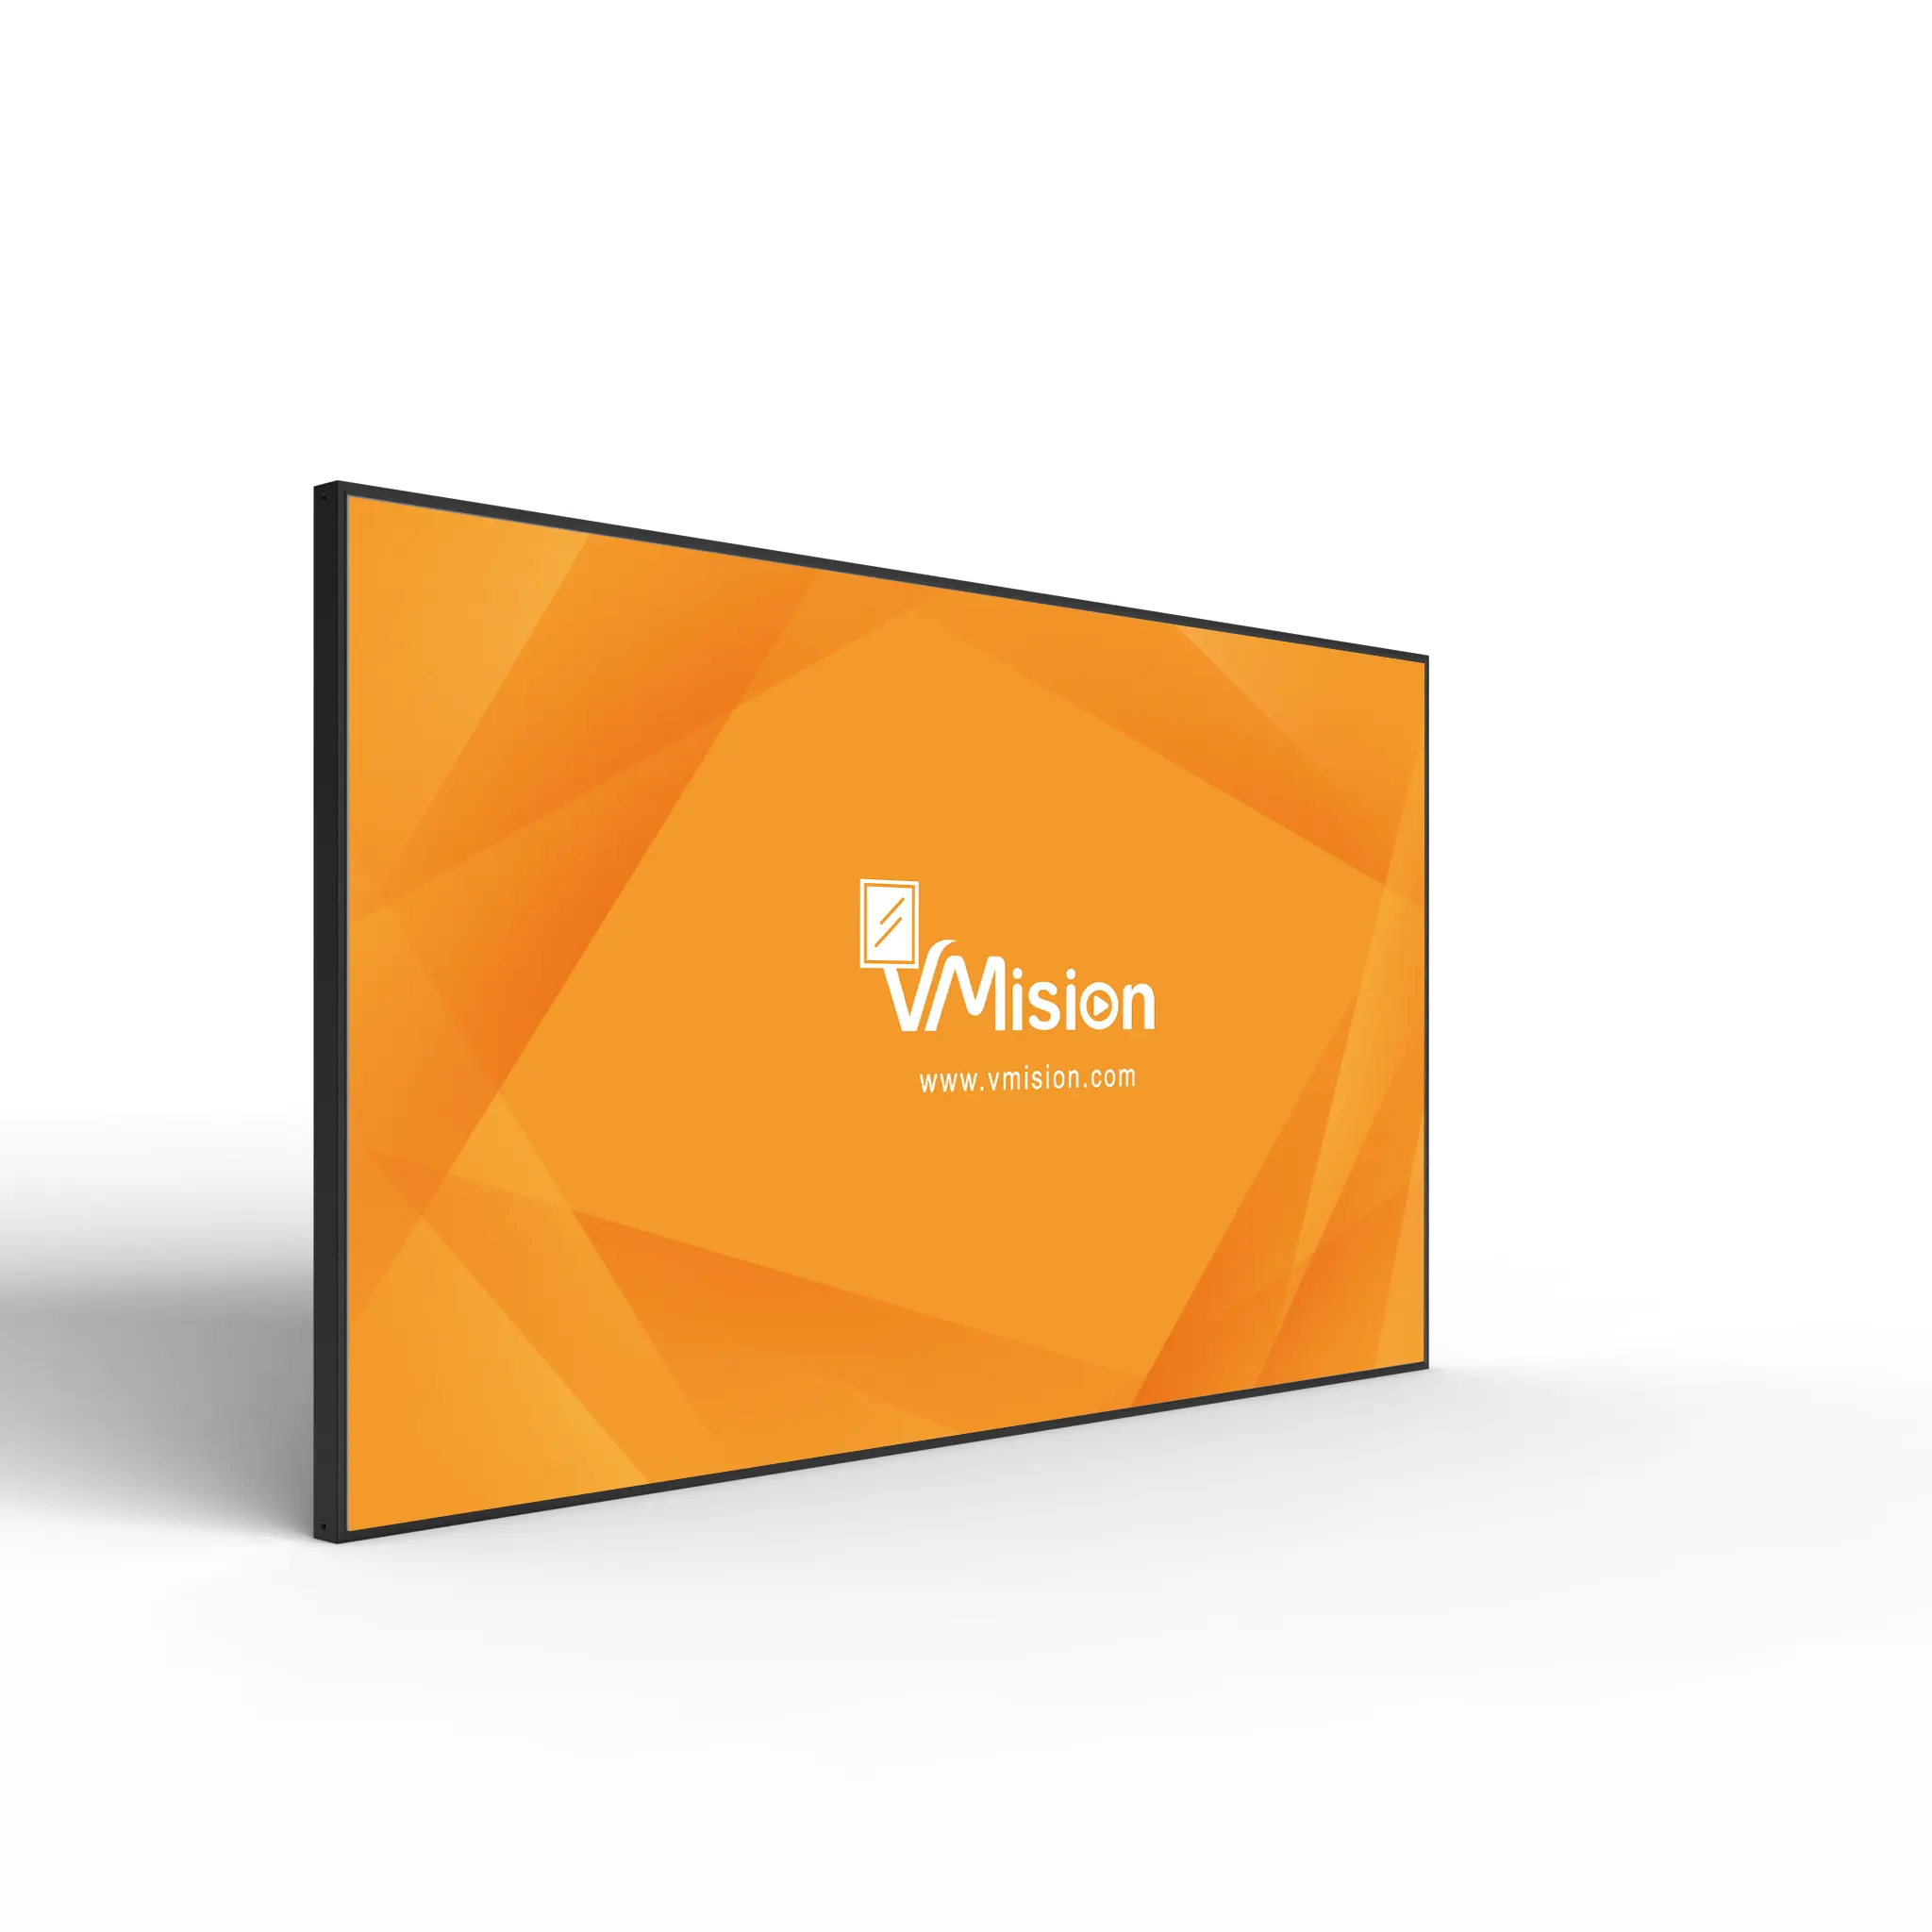 VM-IDV2 43 인치 소매 상점을위한 울트라 씬 디지털 간판 디스플레이 배송 준비